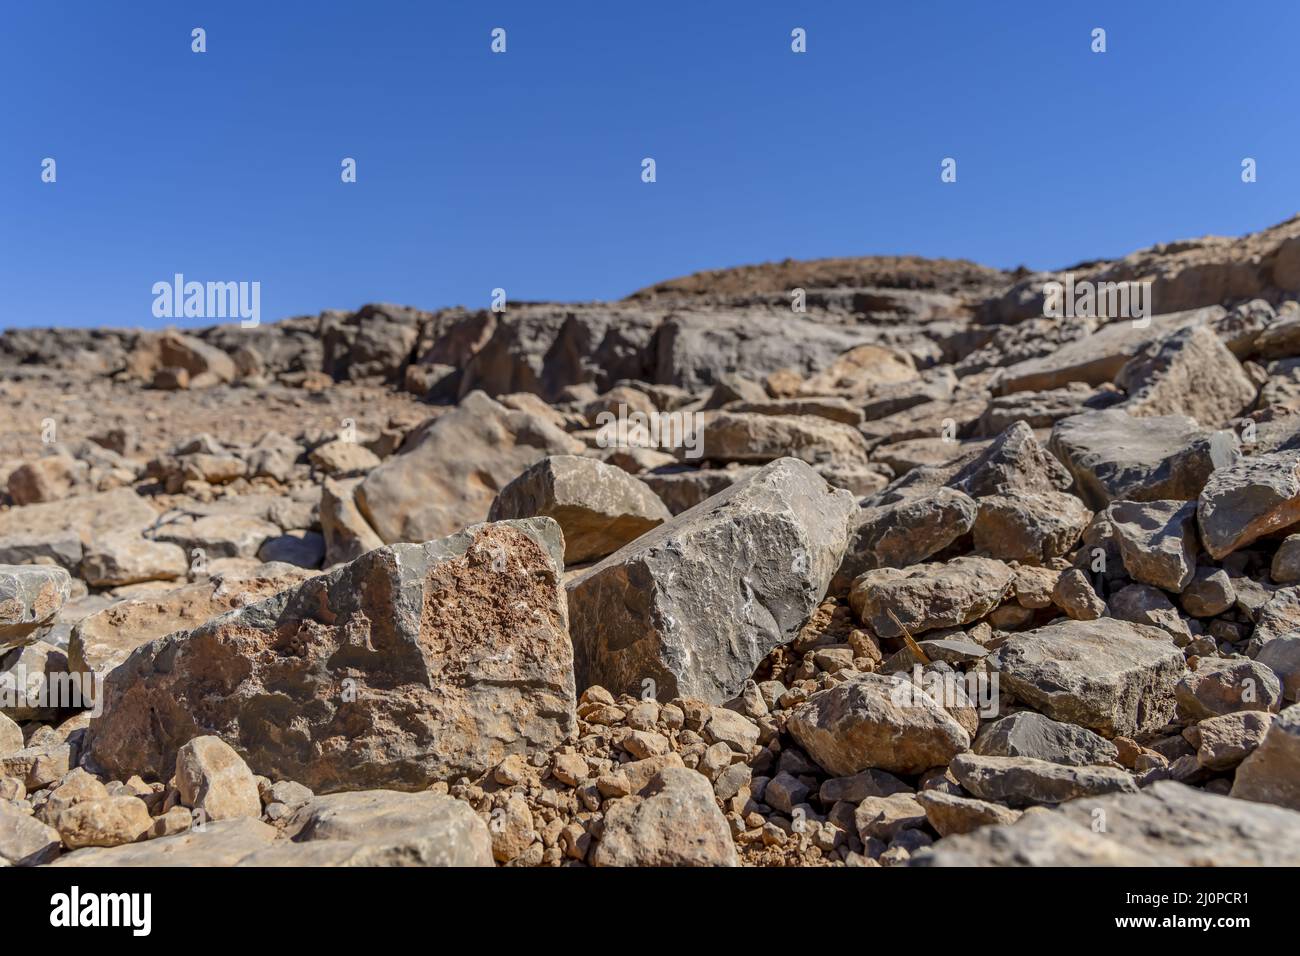 Gara Medouar ist Eine horshoe-förmige geologische Formation in der Nähe von Sijilmasa, Marokko, Afrika Stockfoto